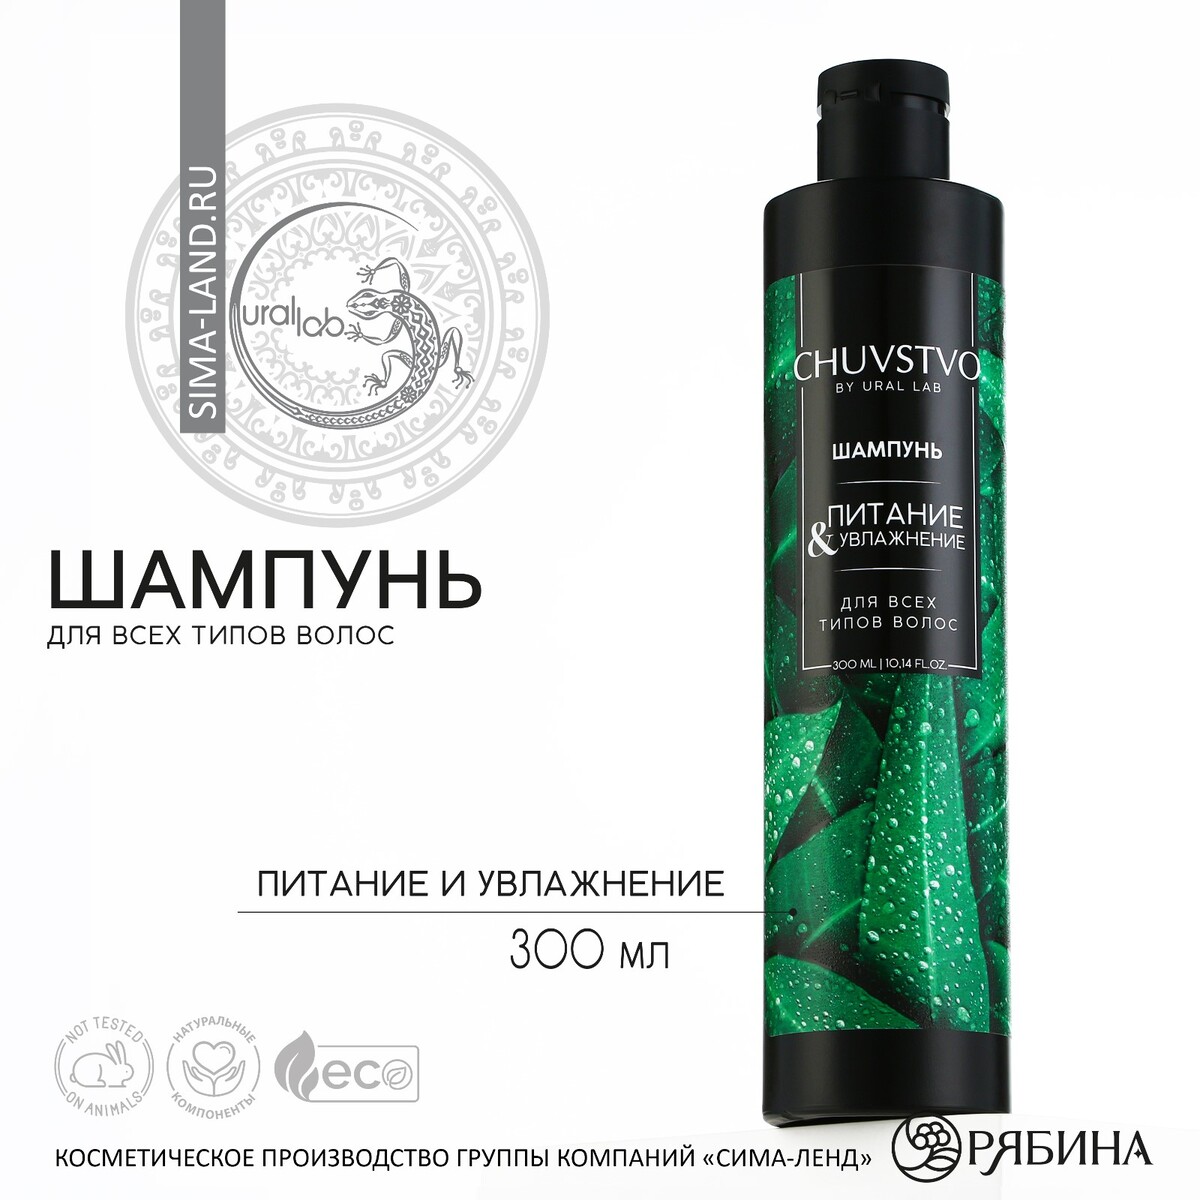 Шампунь для волос, 300 мл, увлажнение и питание, chuvstvo by ural lab шампунь для волос гладкость и увлажнение